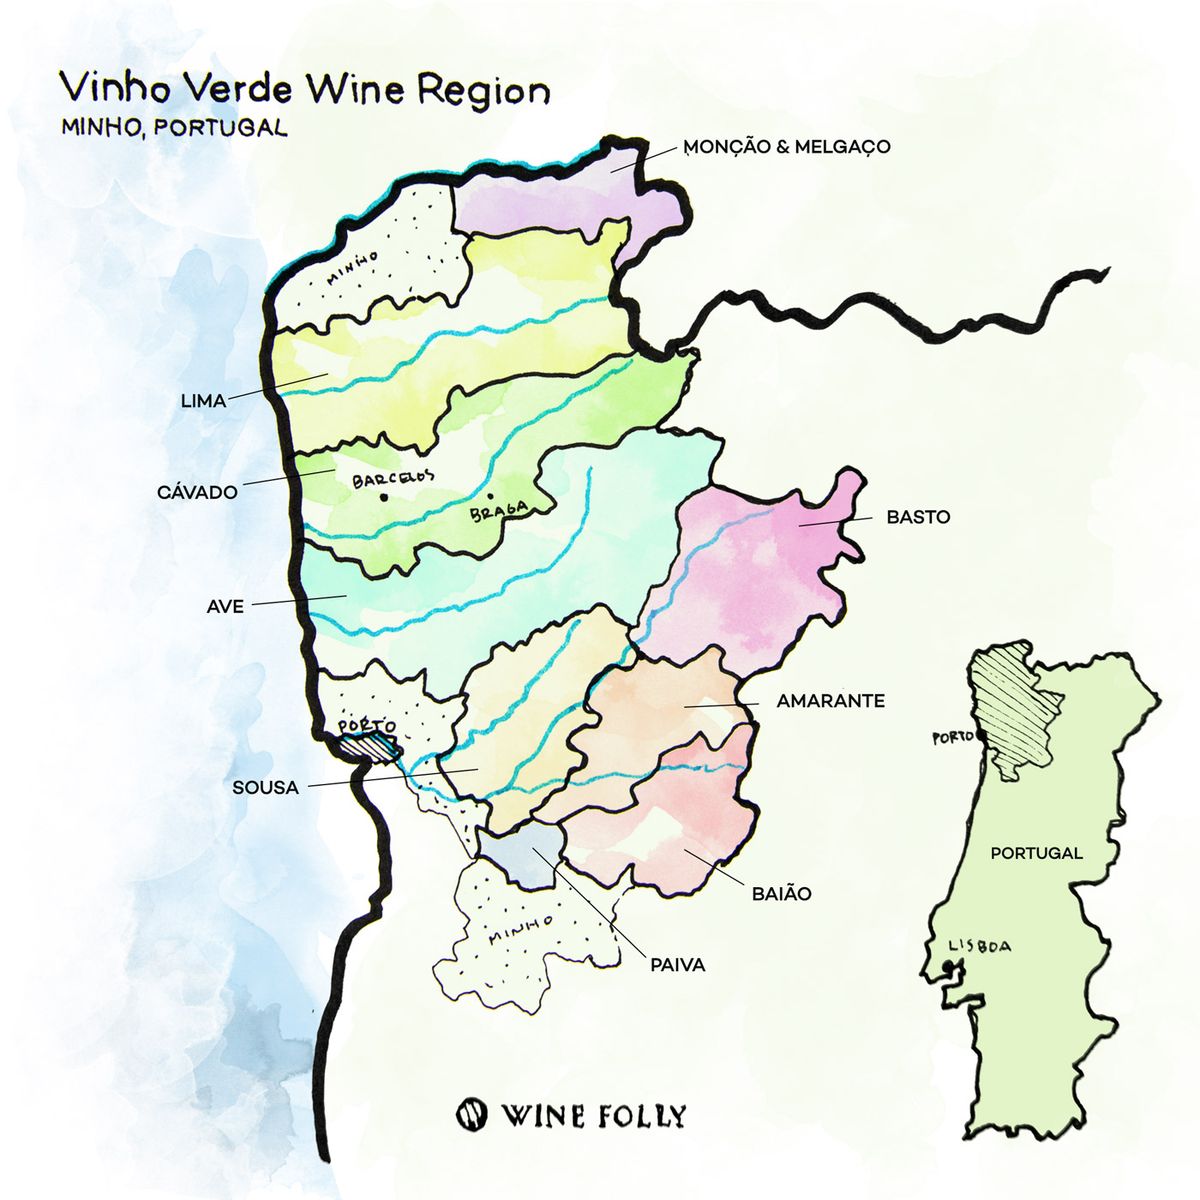 Vinho-Verde-vyno regionas-Minho-Portugalija-vynasFolly